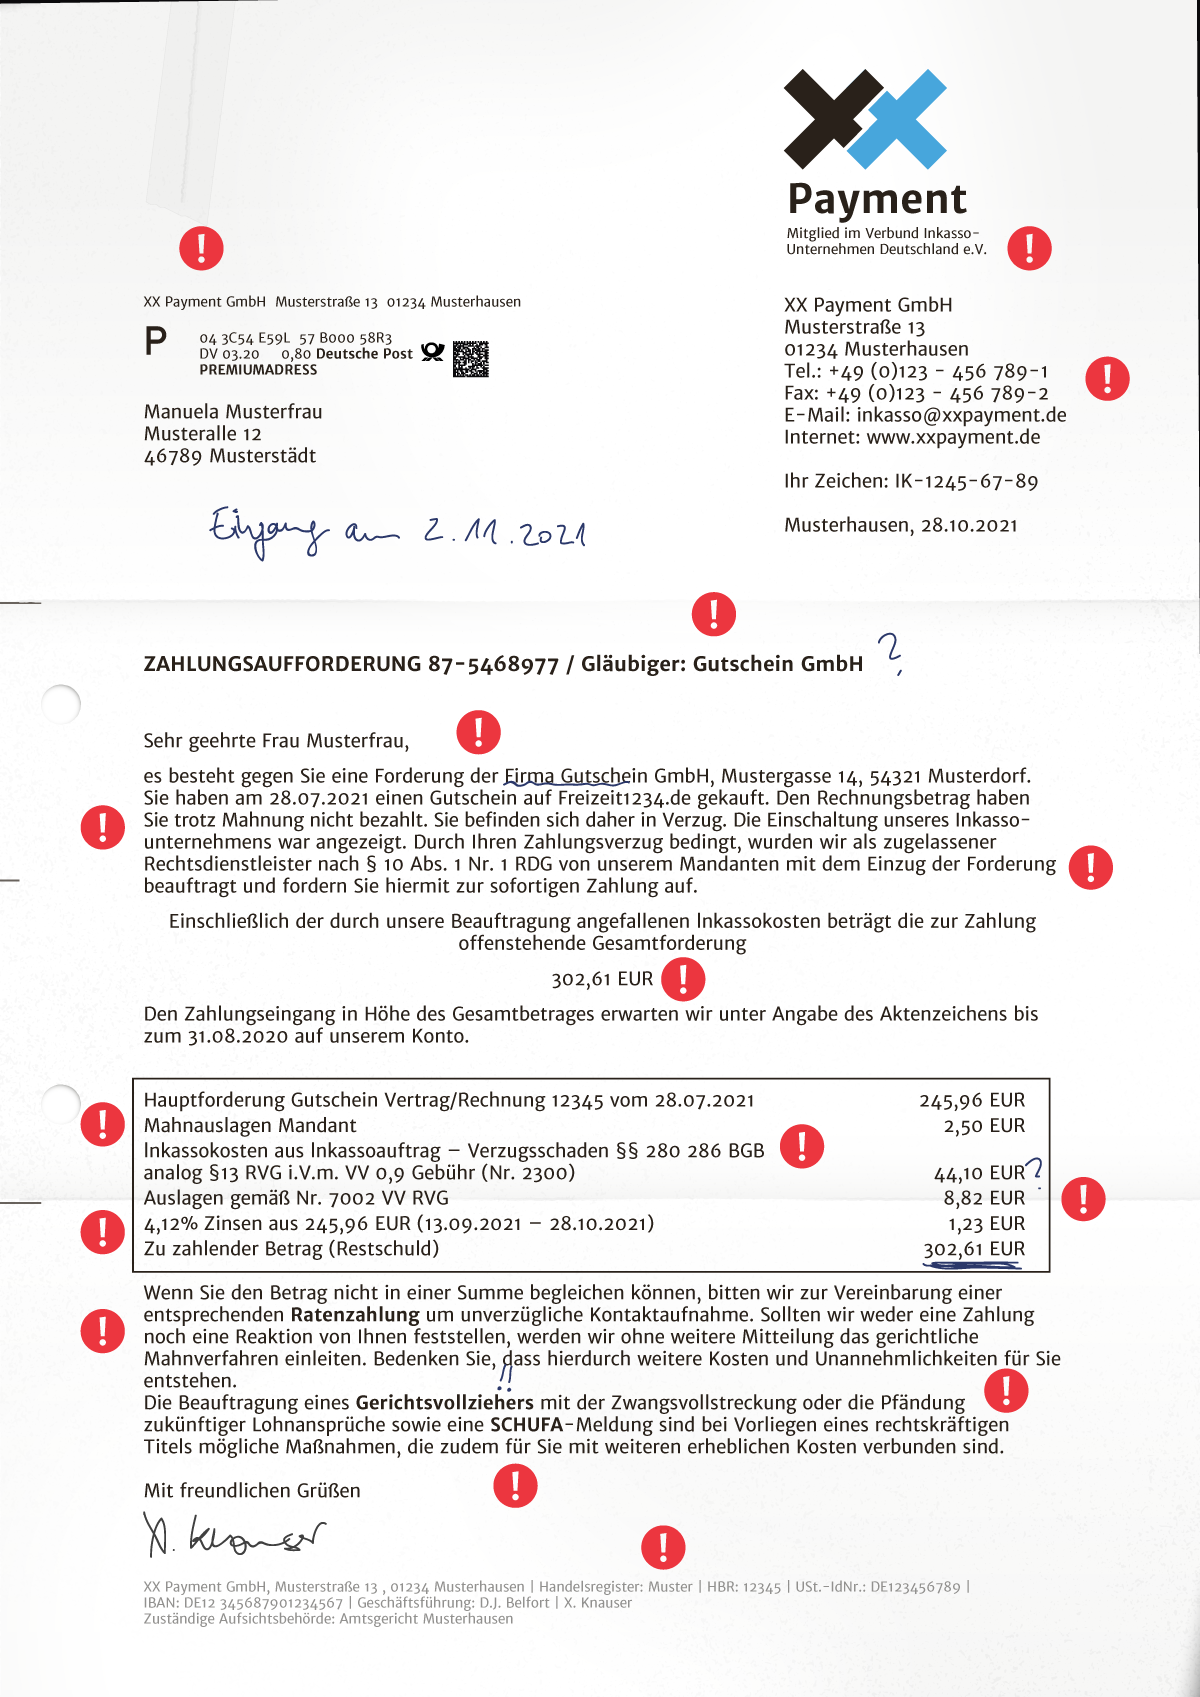 Fairmount GmbH – Inkasso? Zahlungsaufforderung?